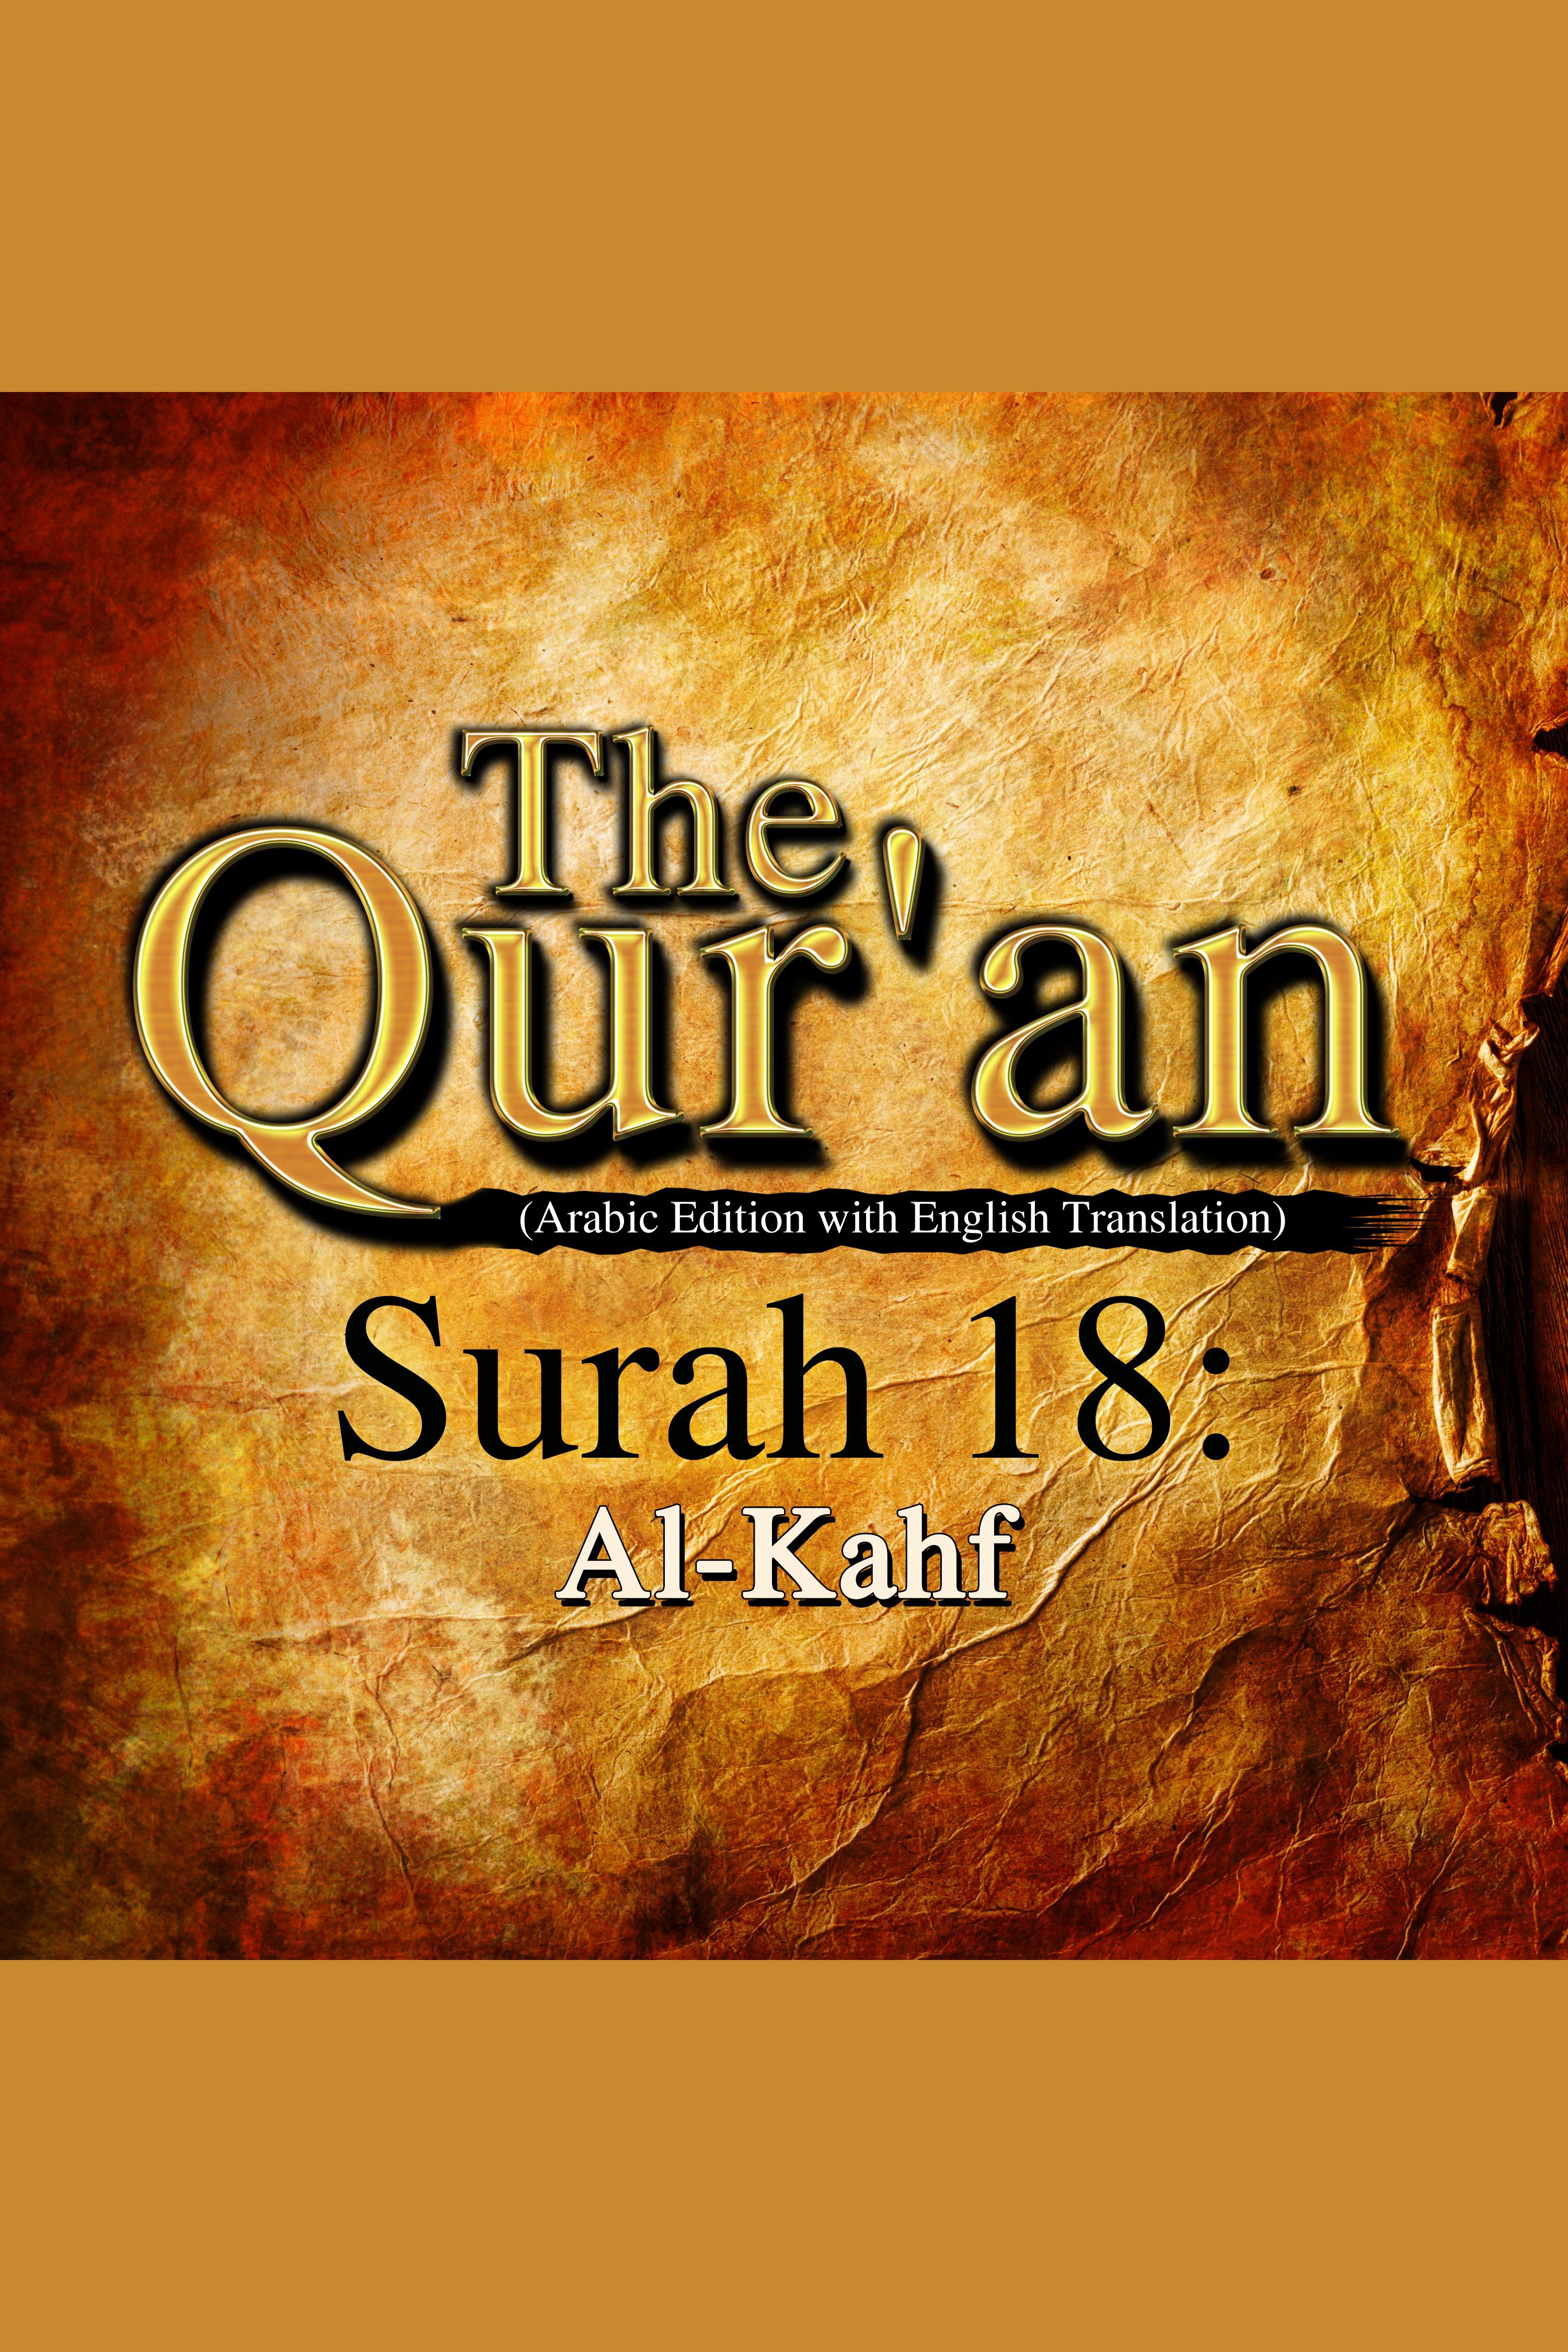 The Qur'an - Surah 18 - Al-Kahf cover image